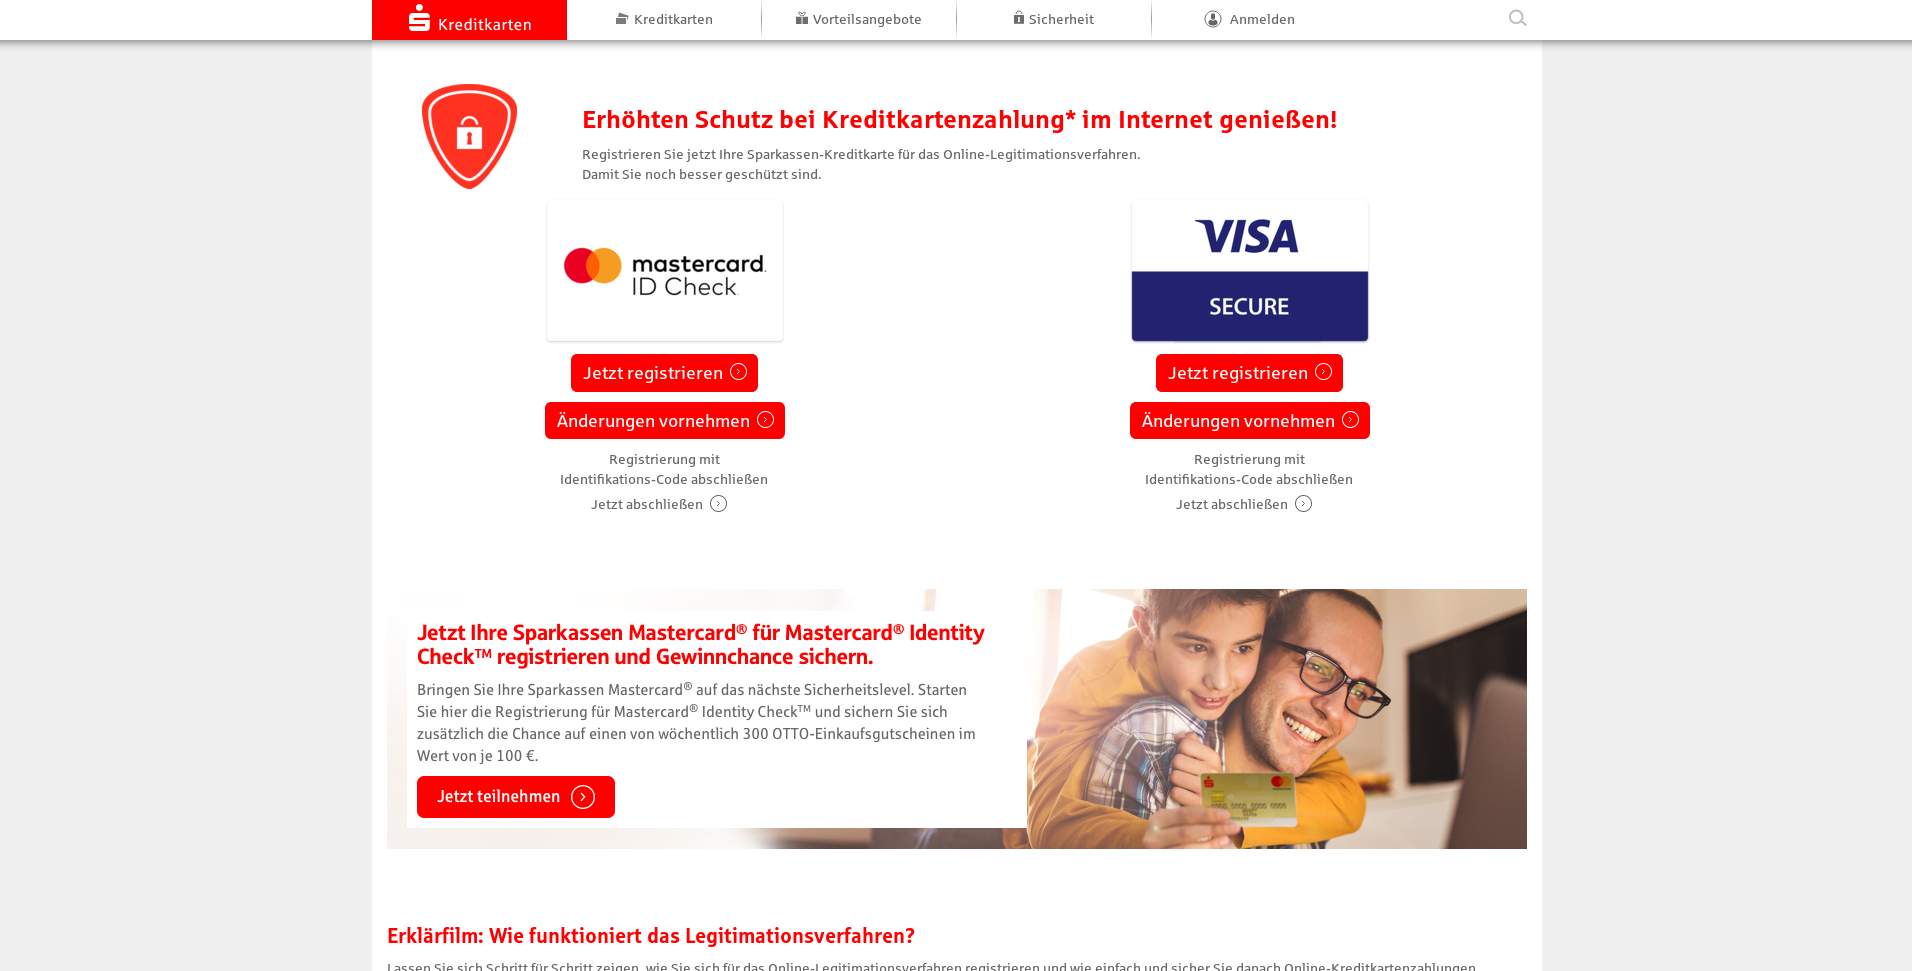 Mastercard ID Check und VISA Secure. Zwei Registrierungsmöglichkeiten auf der Website https://www.sparkassen-kreditkarten.de/sicherheit.html